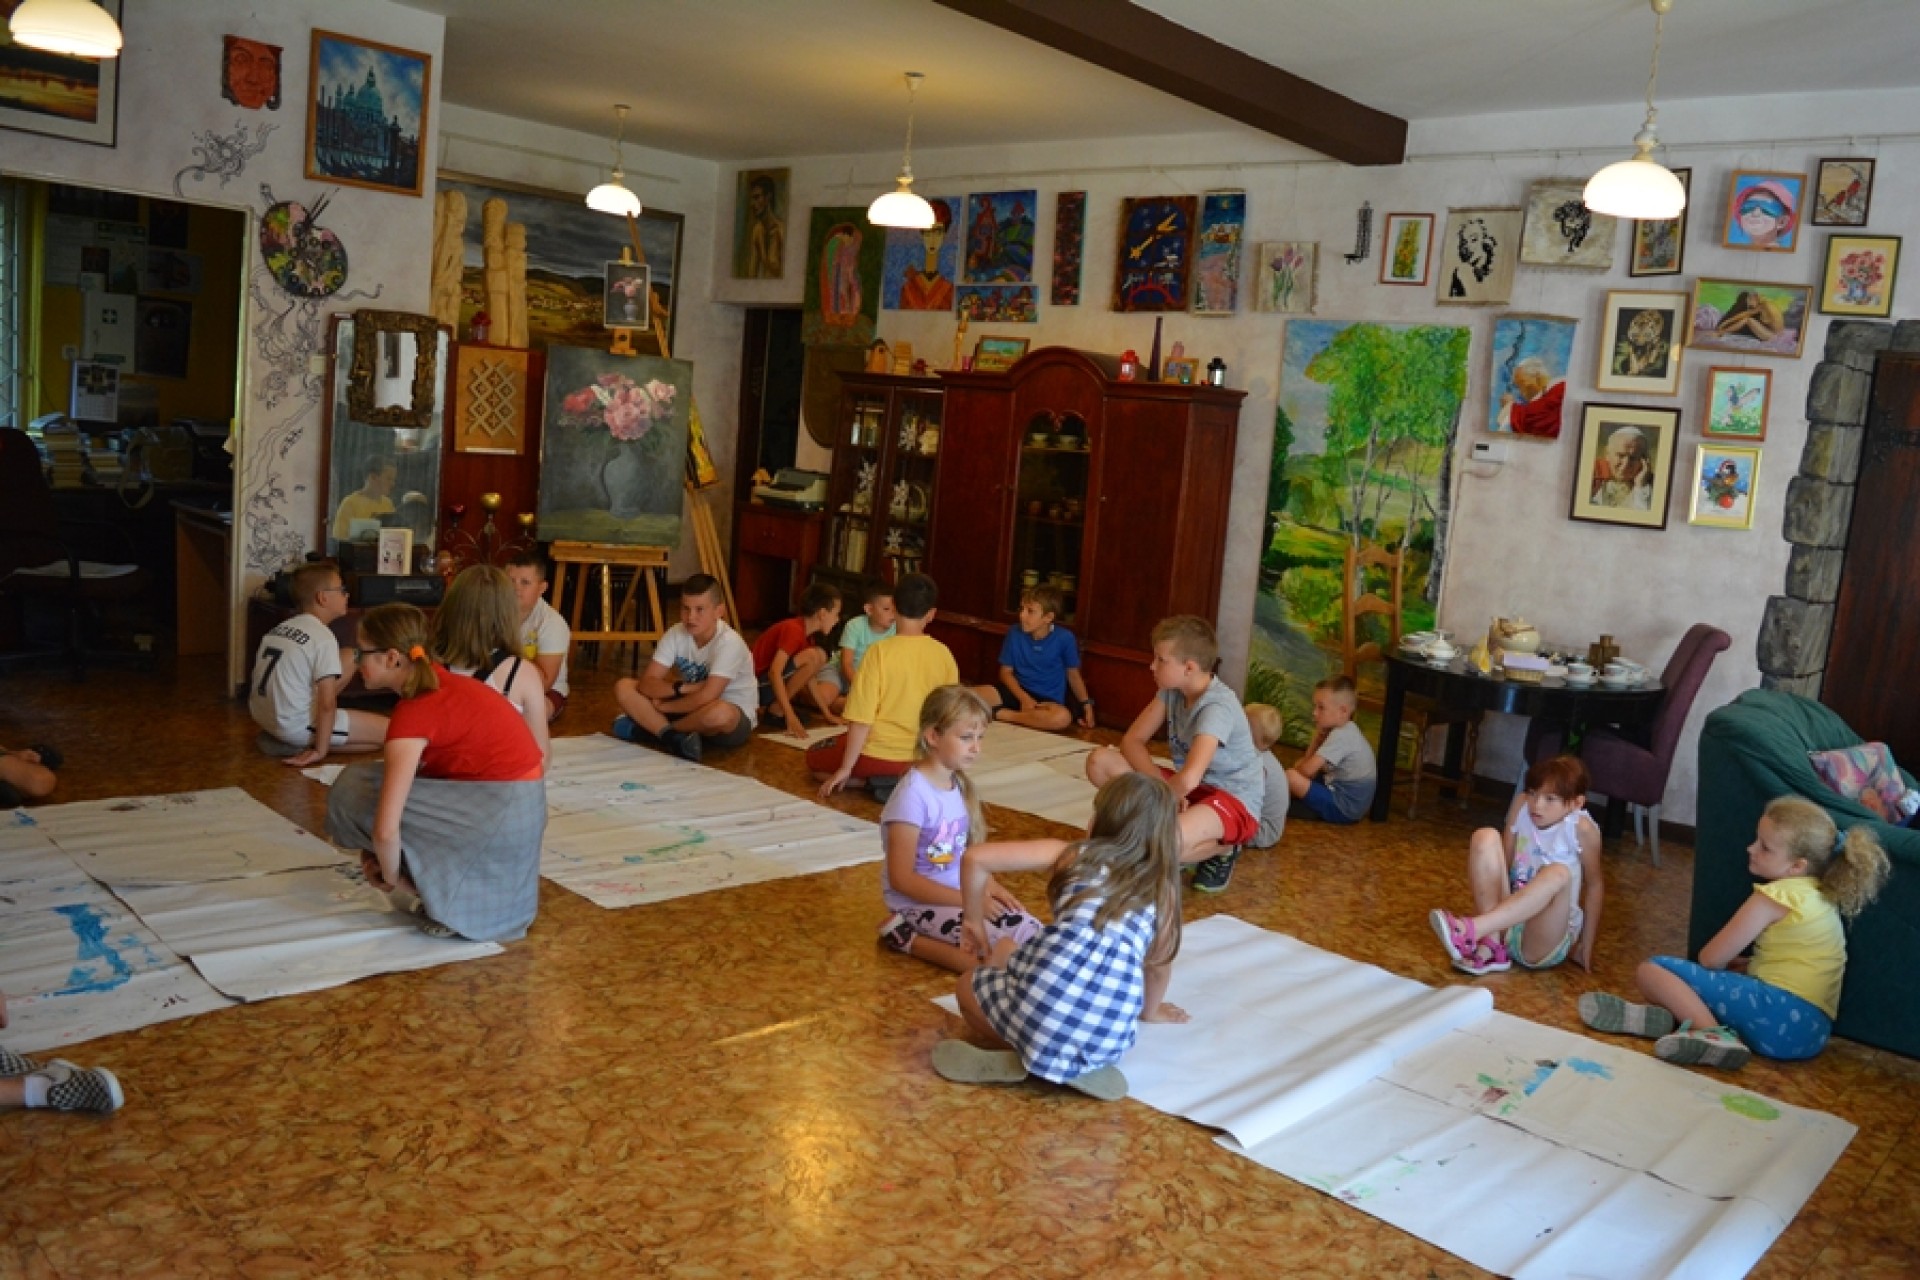 dzieci malują wspólnie palcami obrazki na szarym papierze.